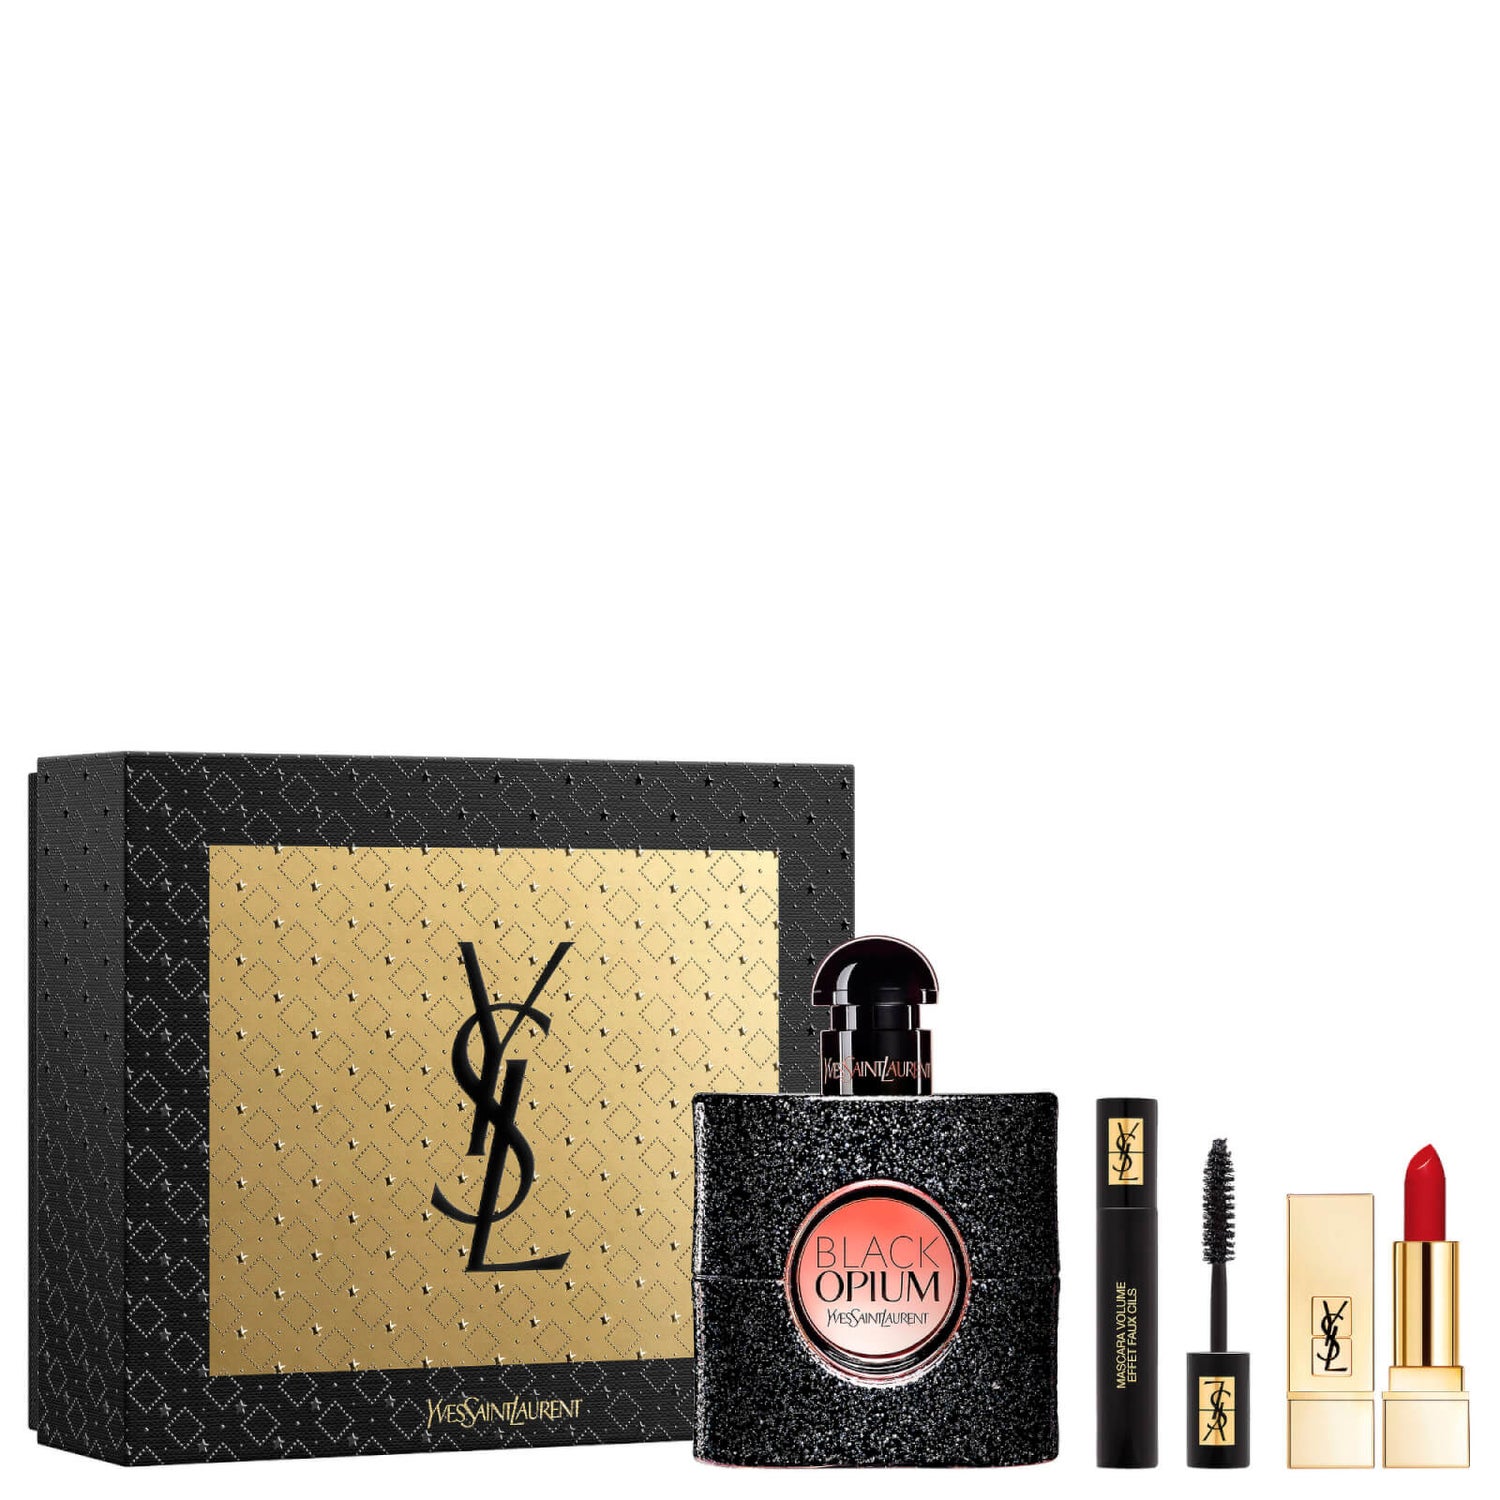 YSL Black Opium Eau de Parfum 50ml and Makeup Icons Gift Set